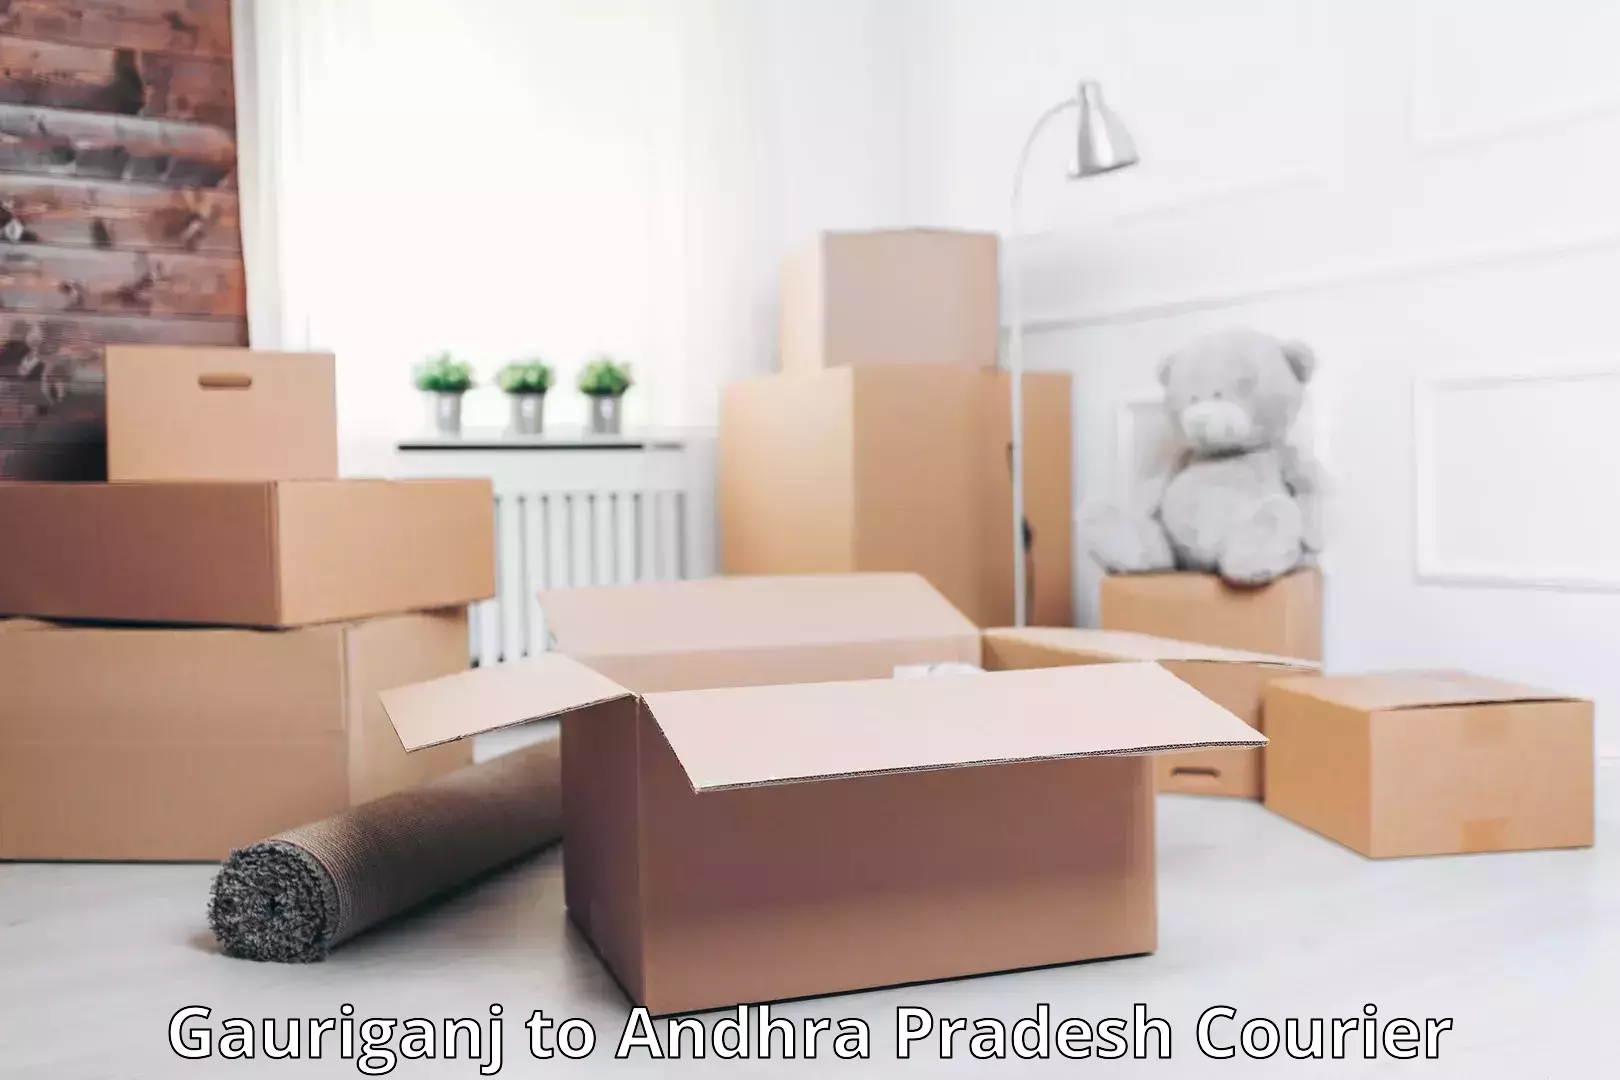 Luggage delivery app Gauriganj to Andhra Pradesh